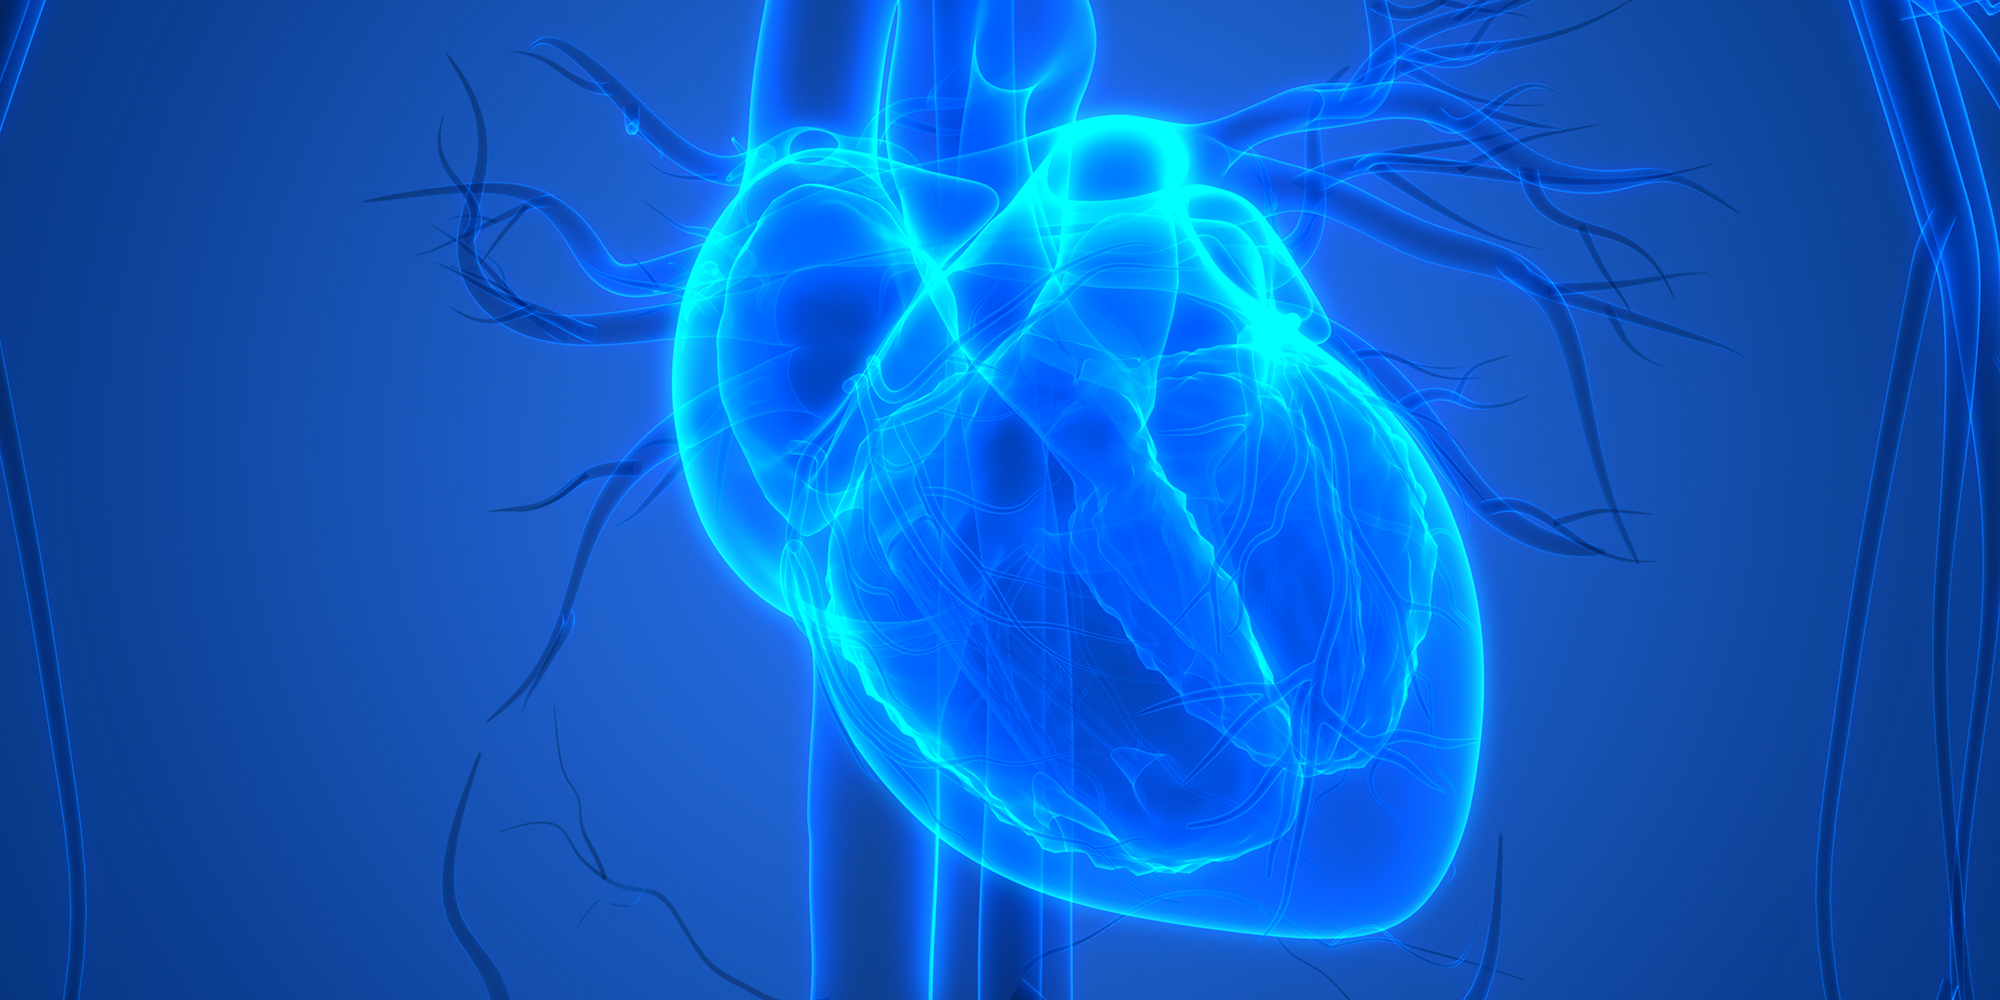 Illuminated heart illustration.